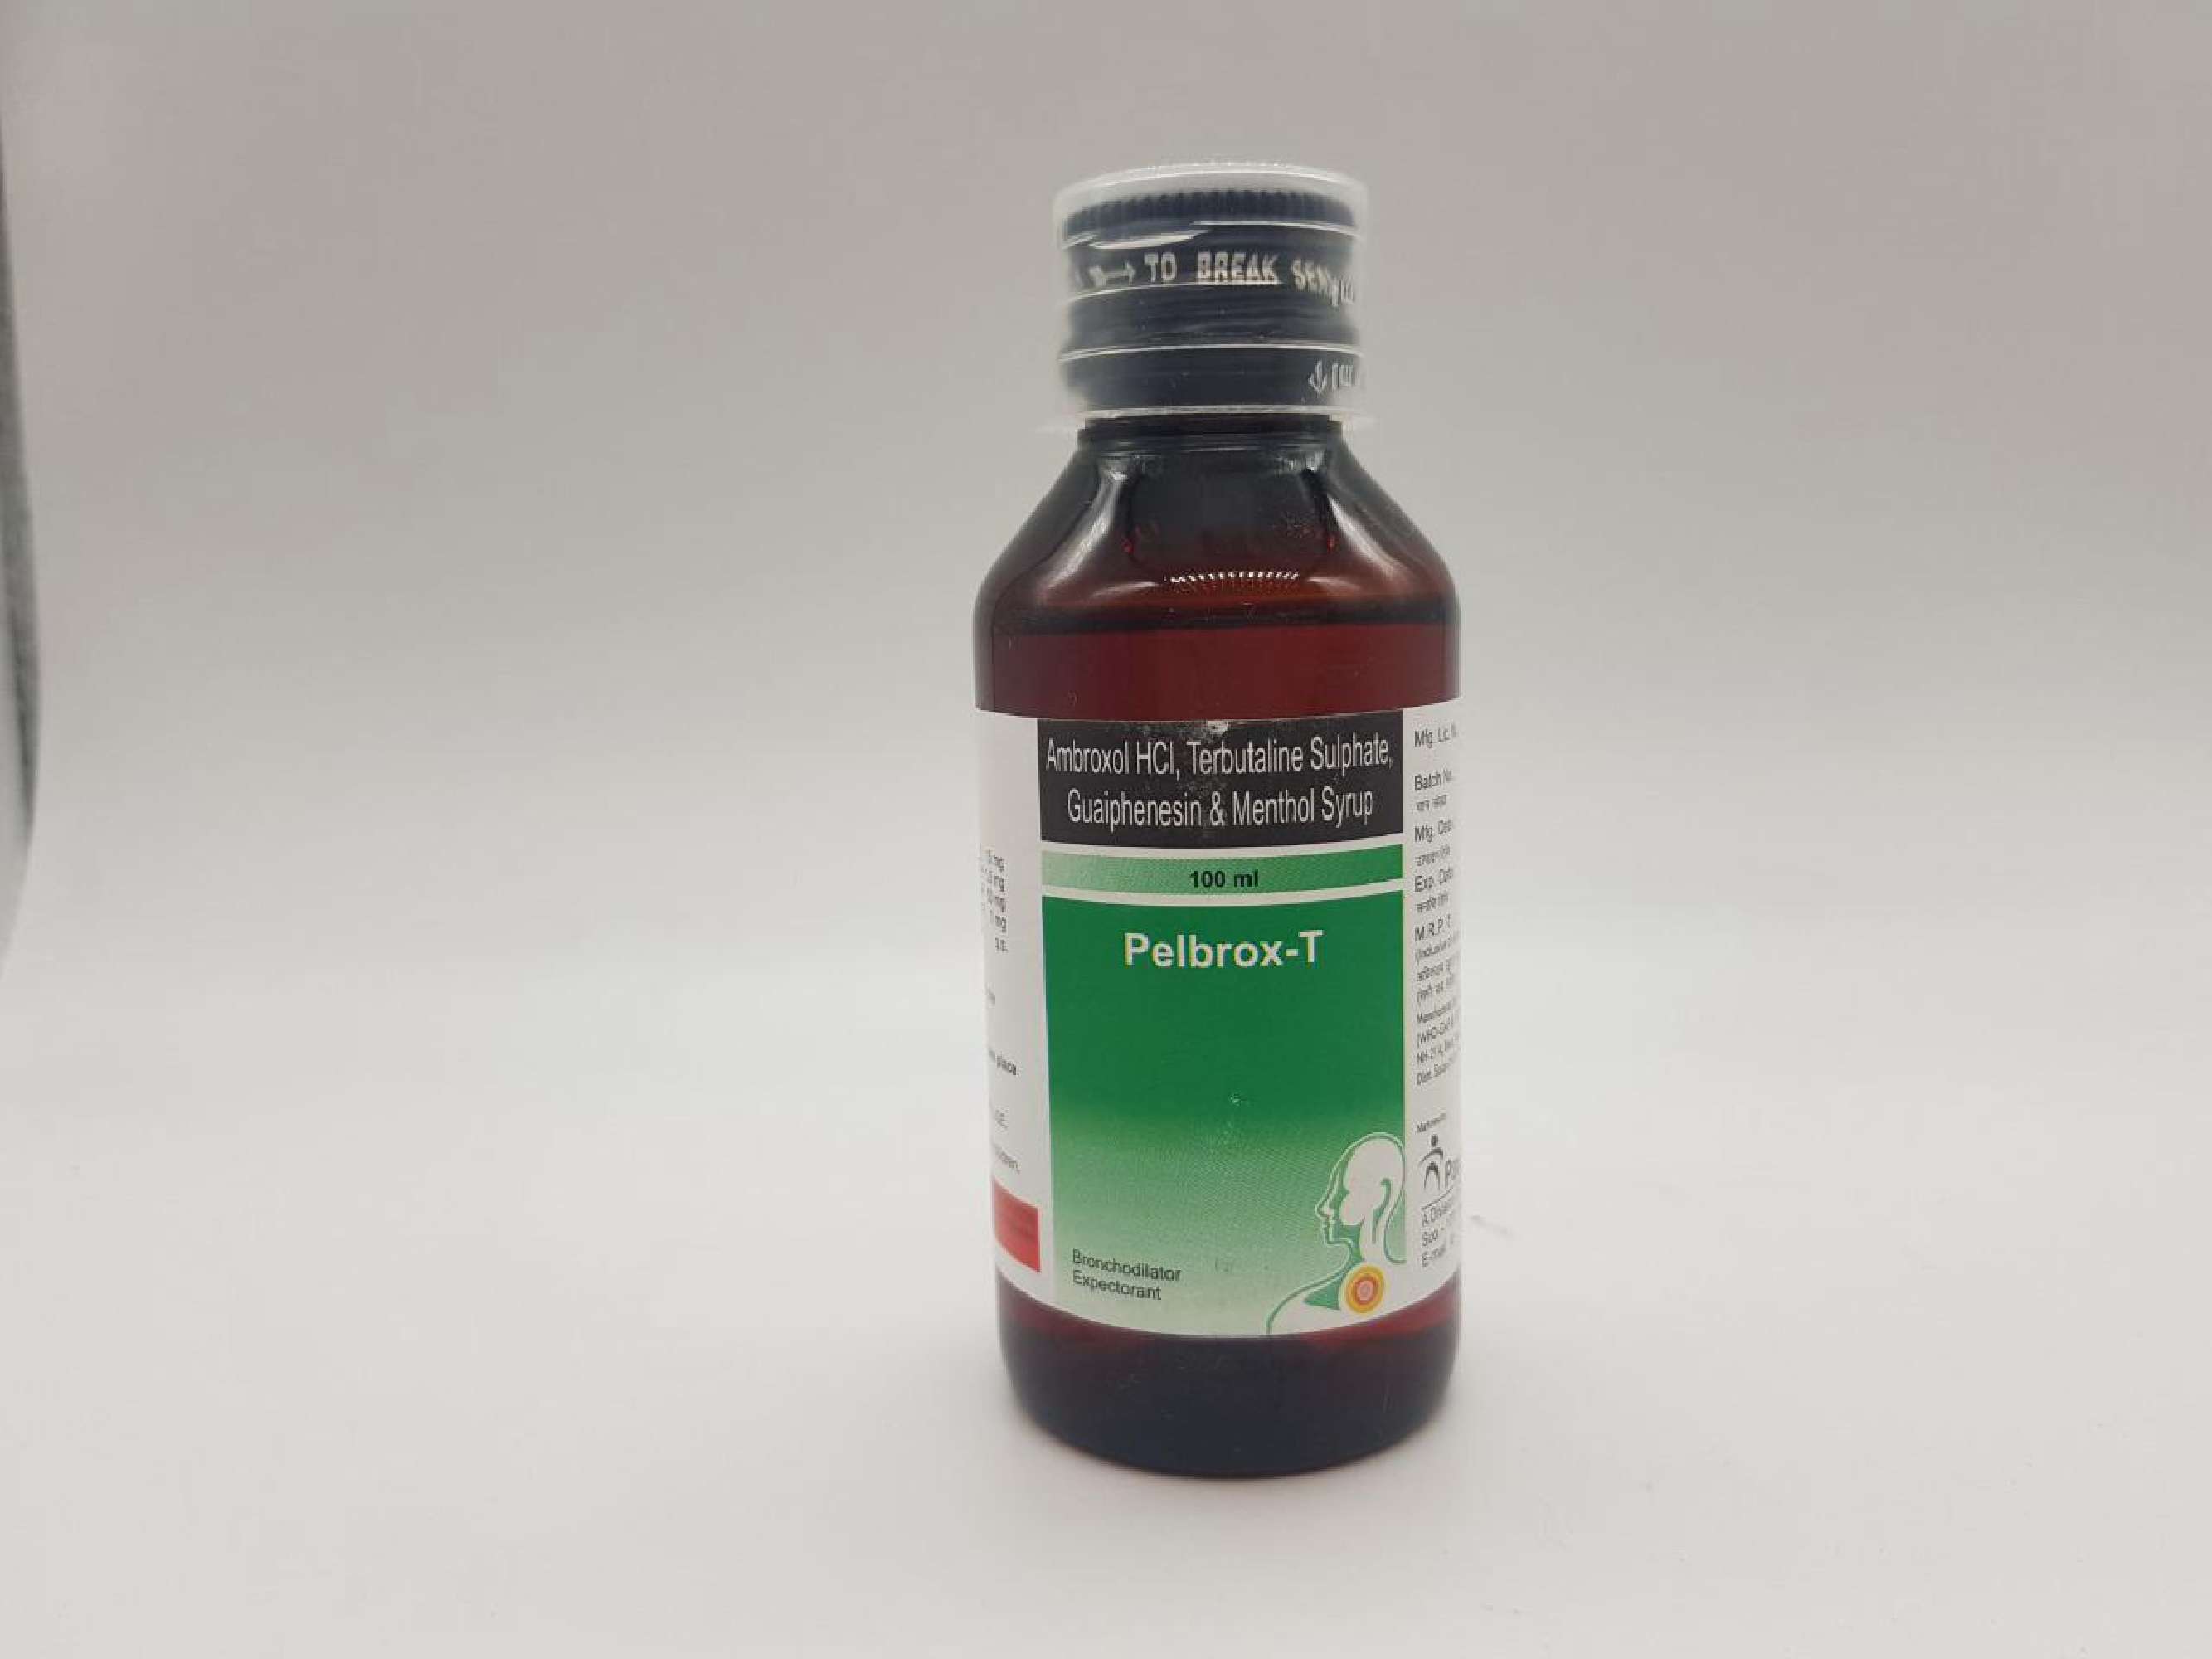 ambroxol hcl.- 15 mg + terbutaline sulphate -1.50mg + guaiphenesin -50mg + menthol i.p.- 1 mg / 5ml